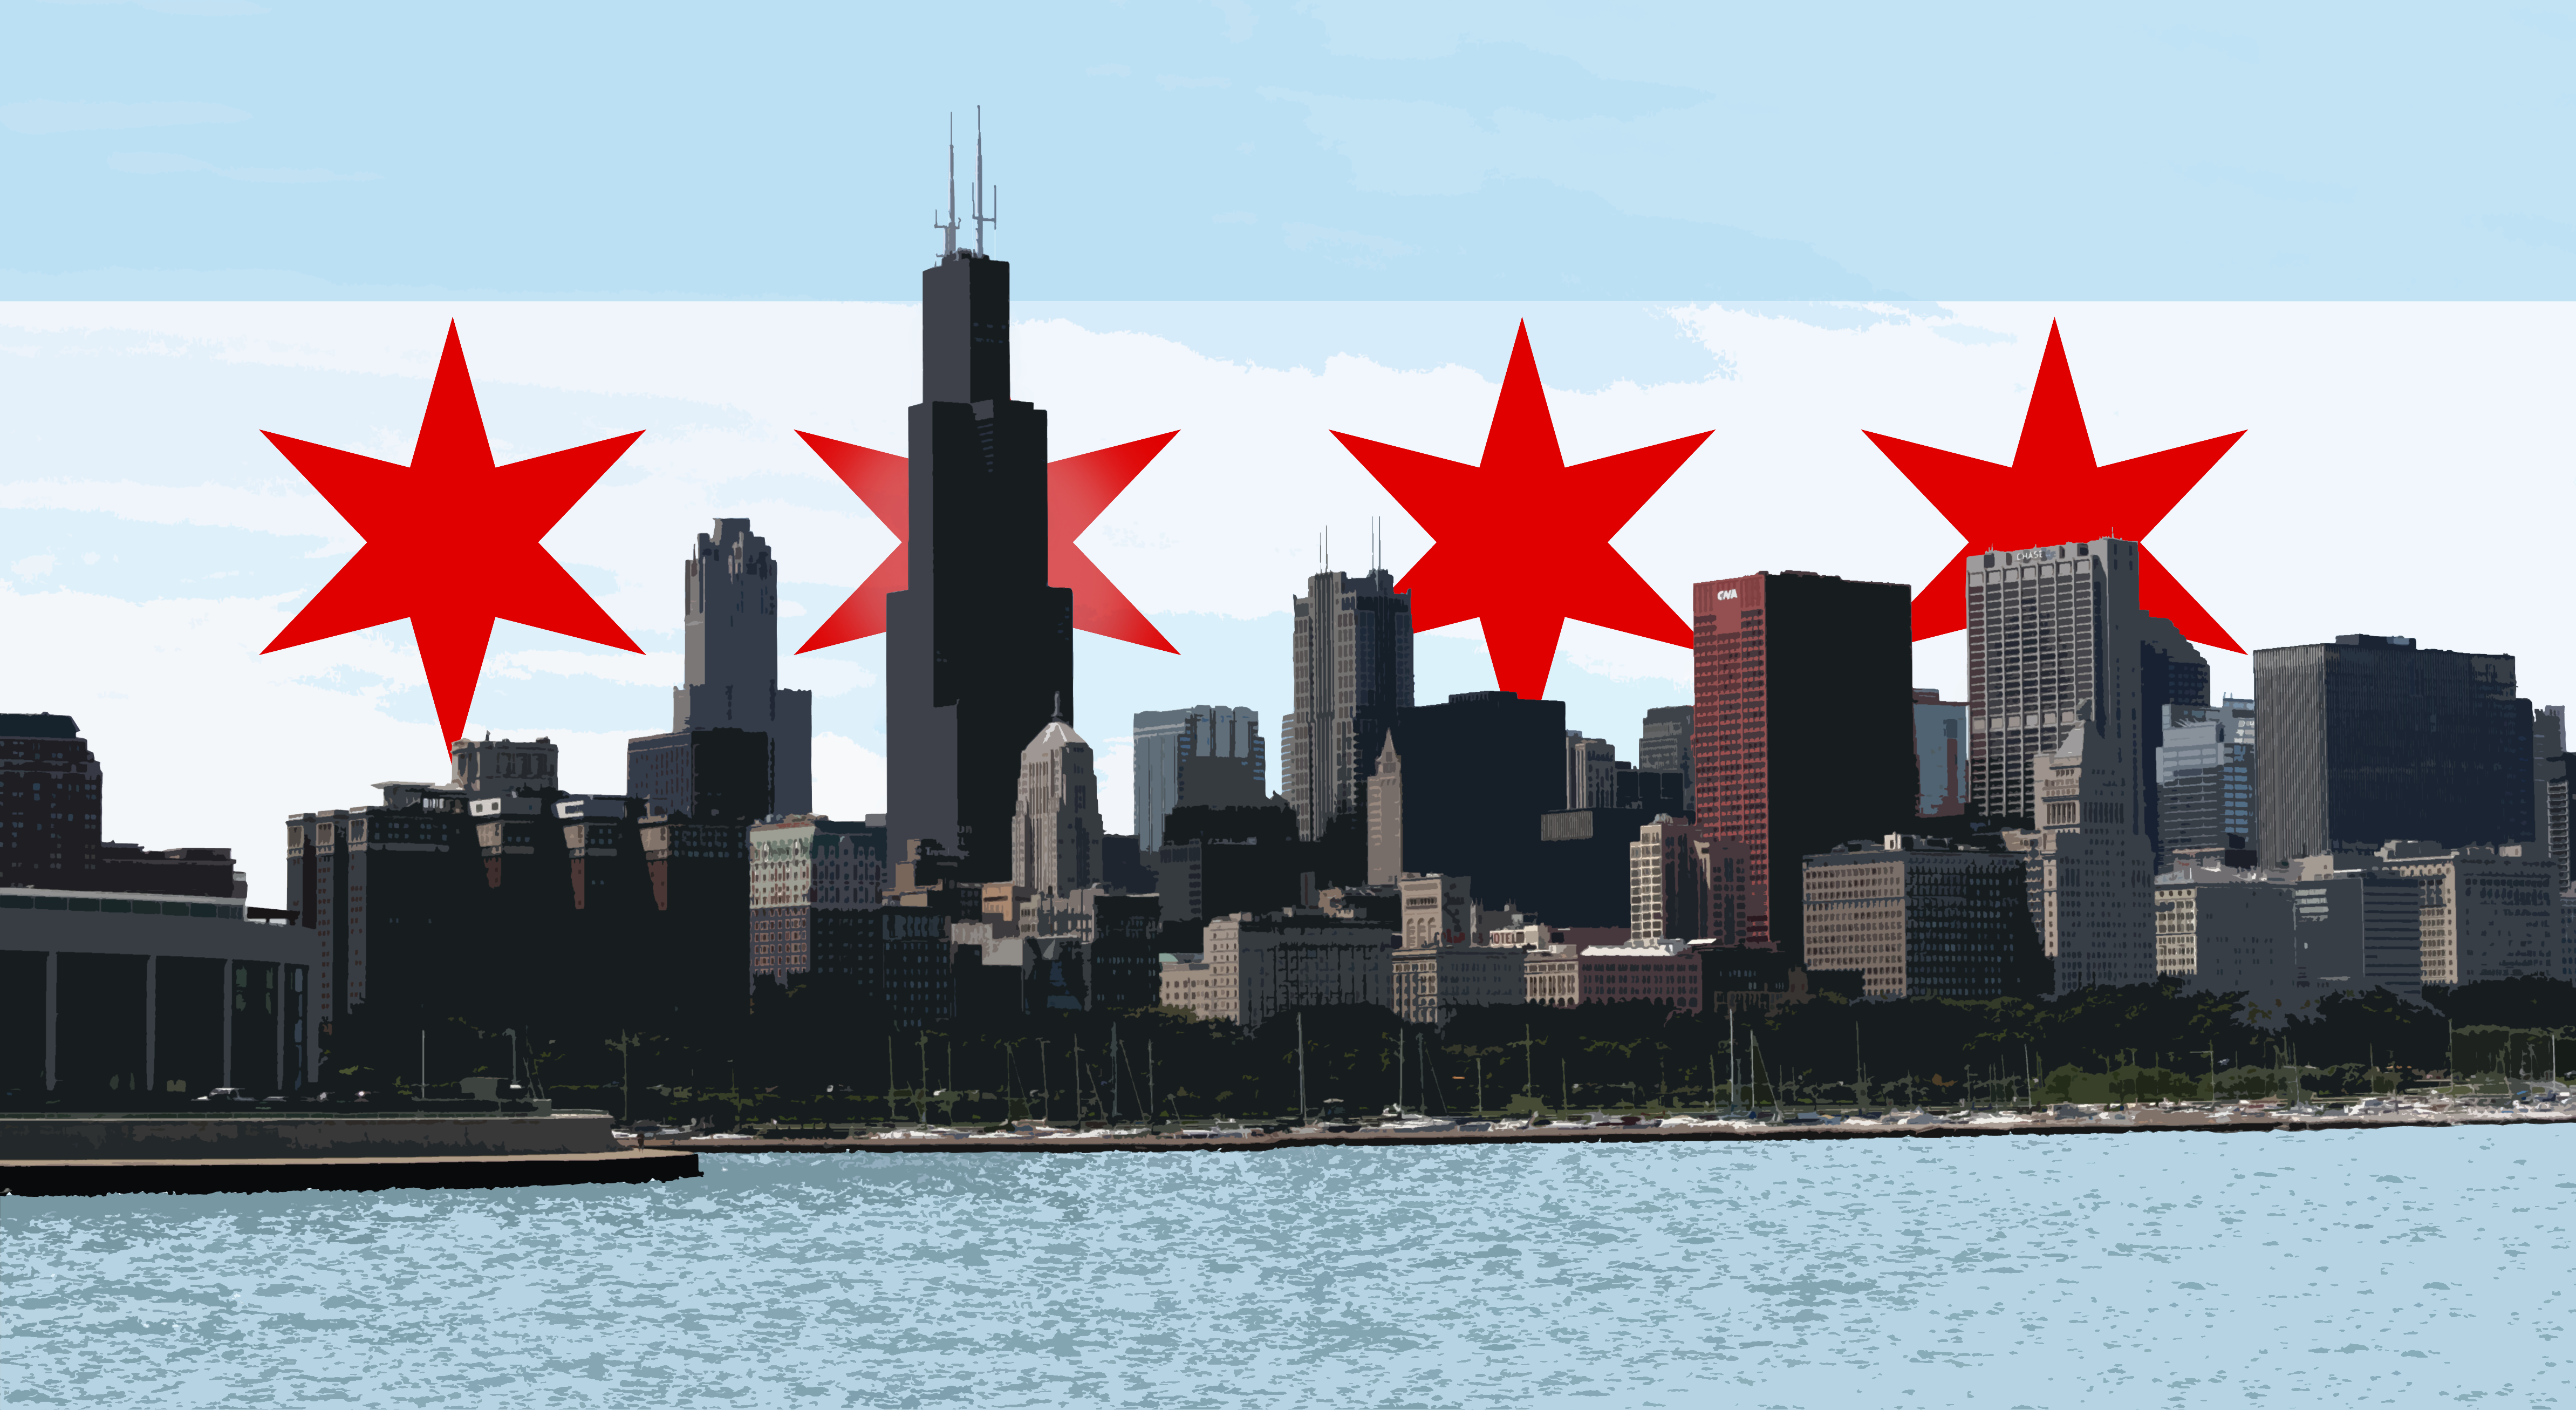 ChicagoSkyline Full Flag